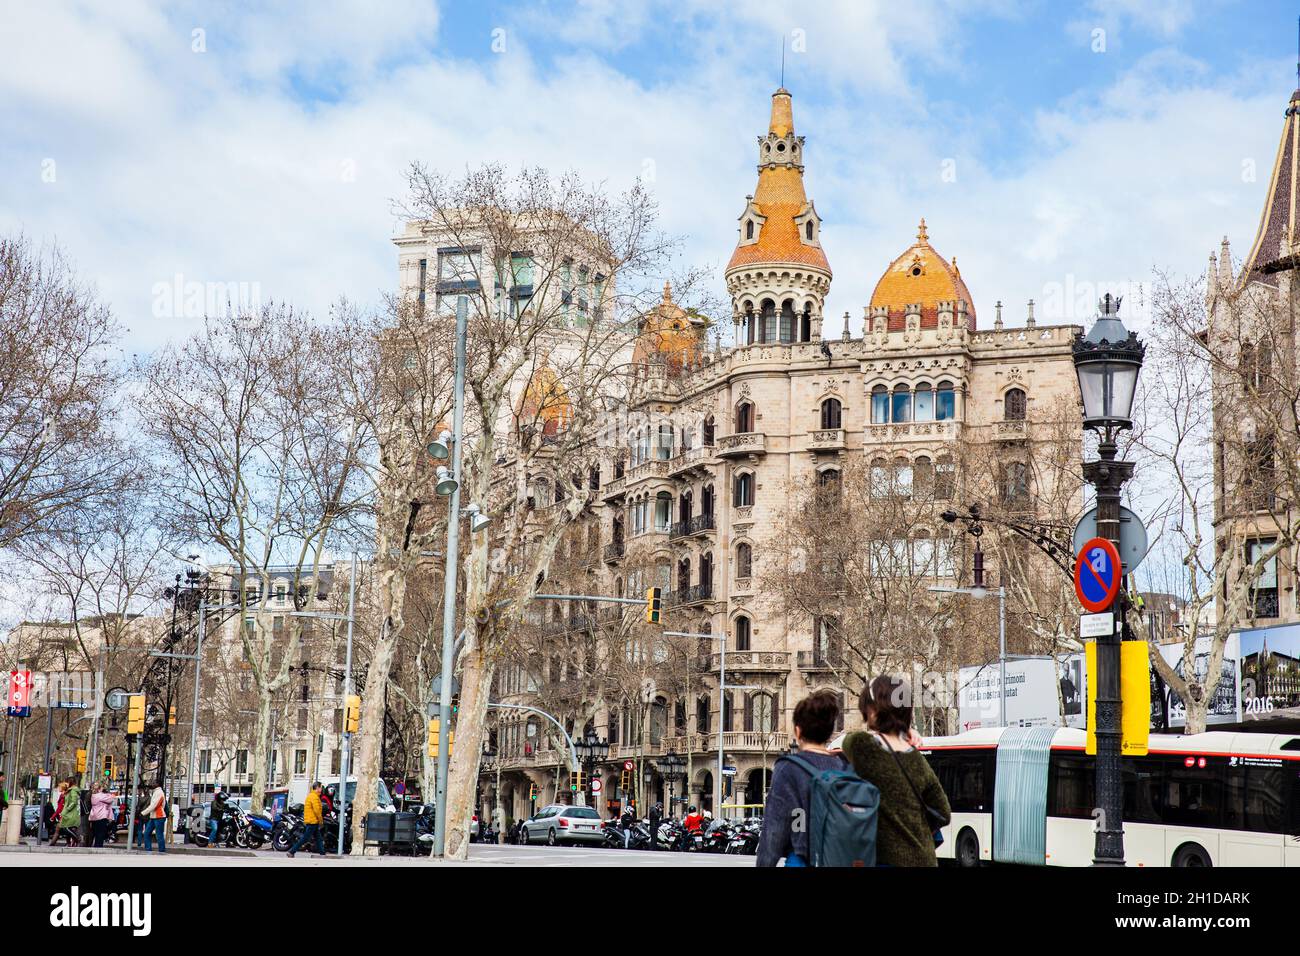 BARCELONA - MARCH, 2018: Gran Via de les Corts Catalanes in Barcelona Spain Stock Photo